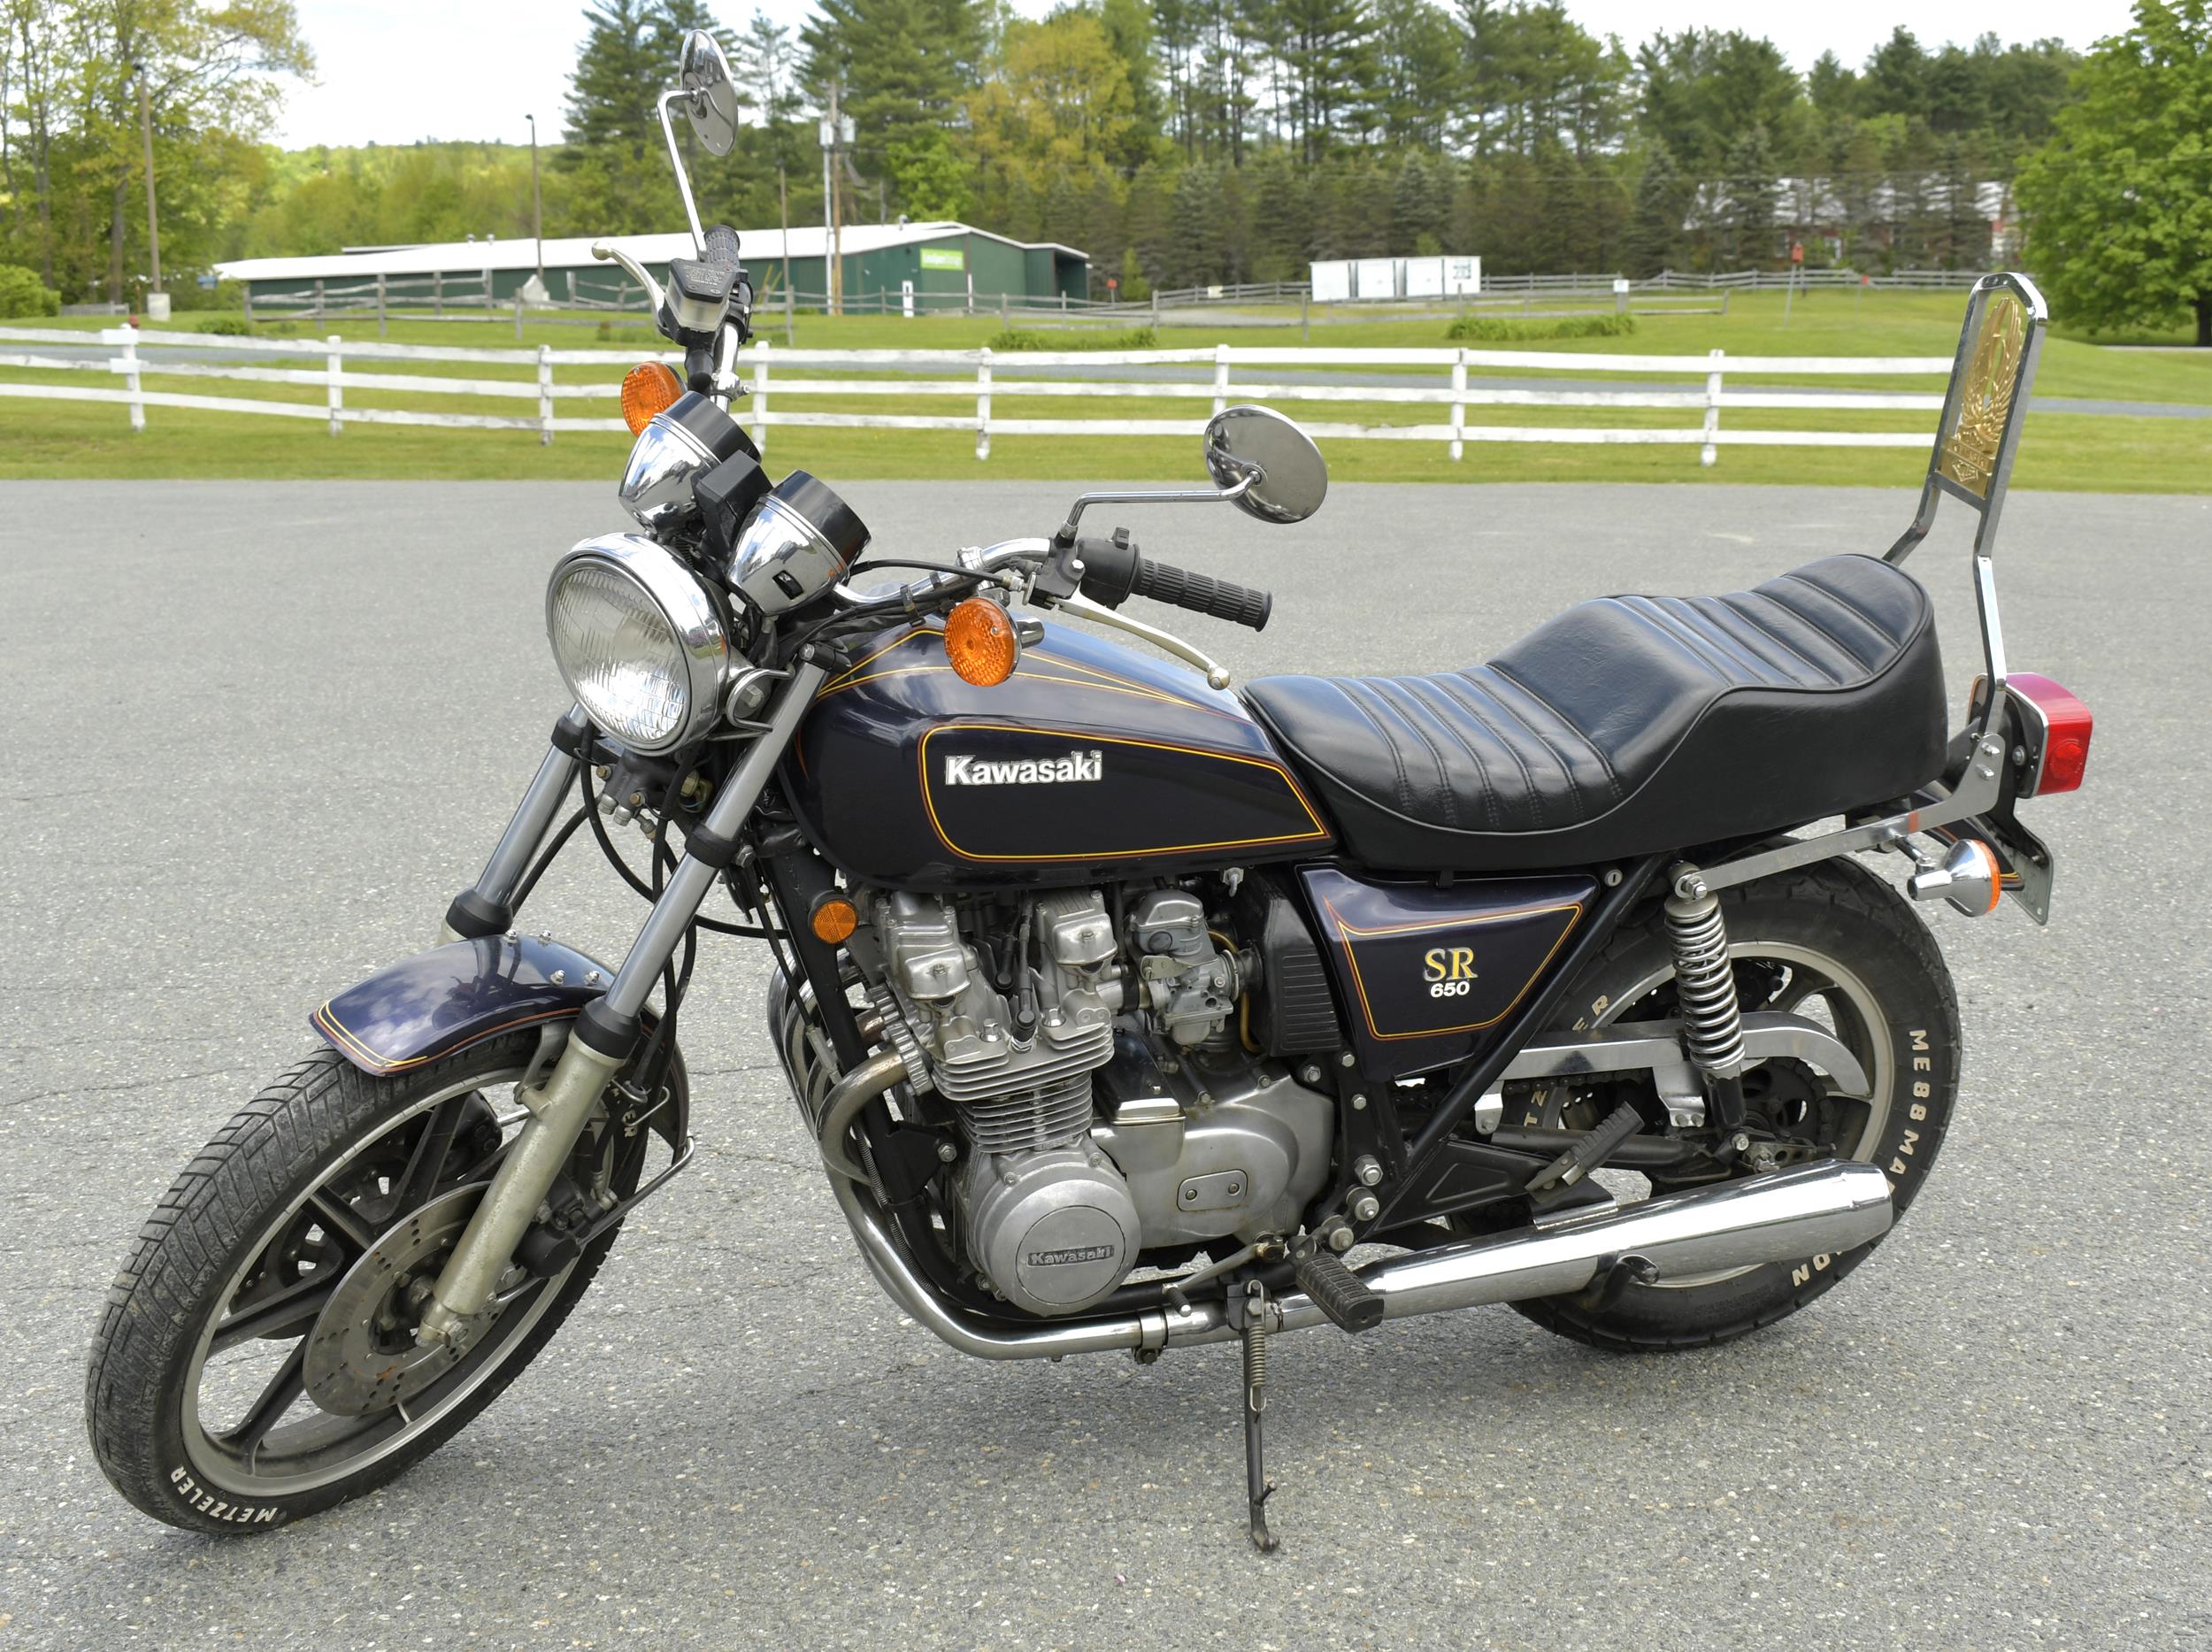 KAWASAKI 1979 KZ650 S.R. MOTORCYCLE.